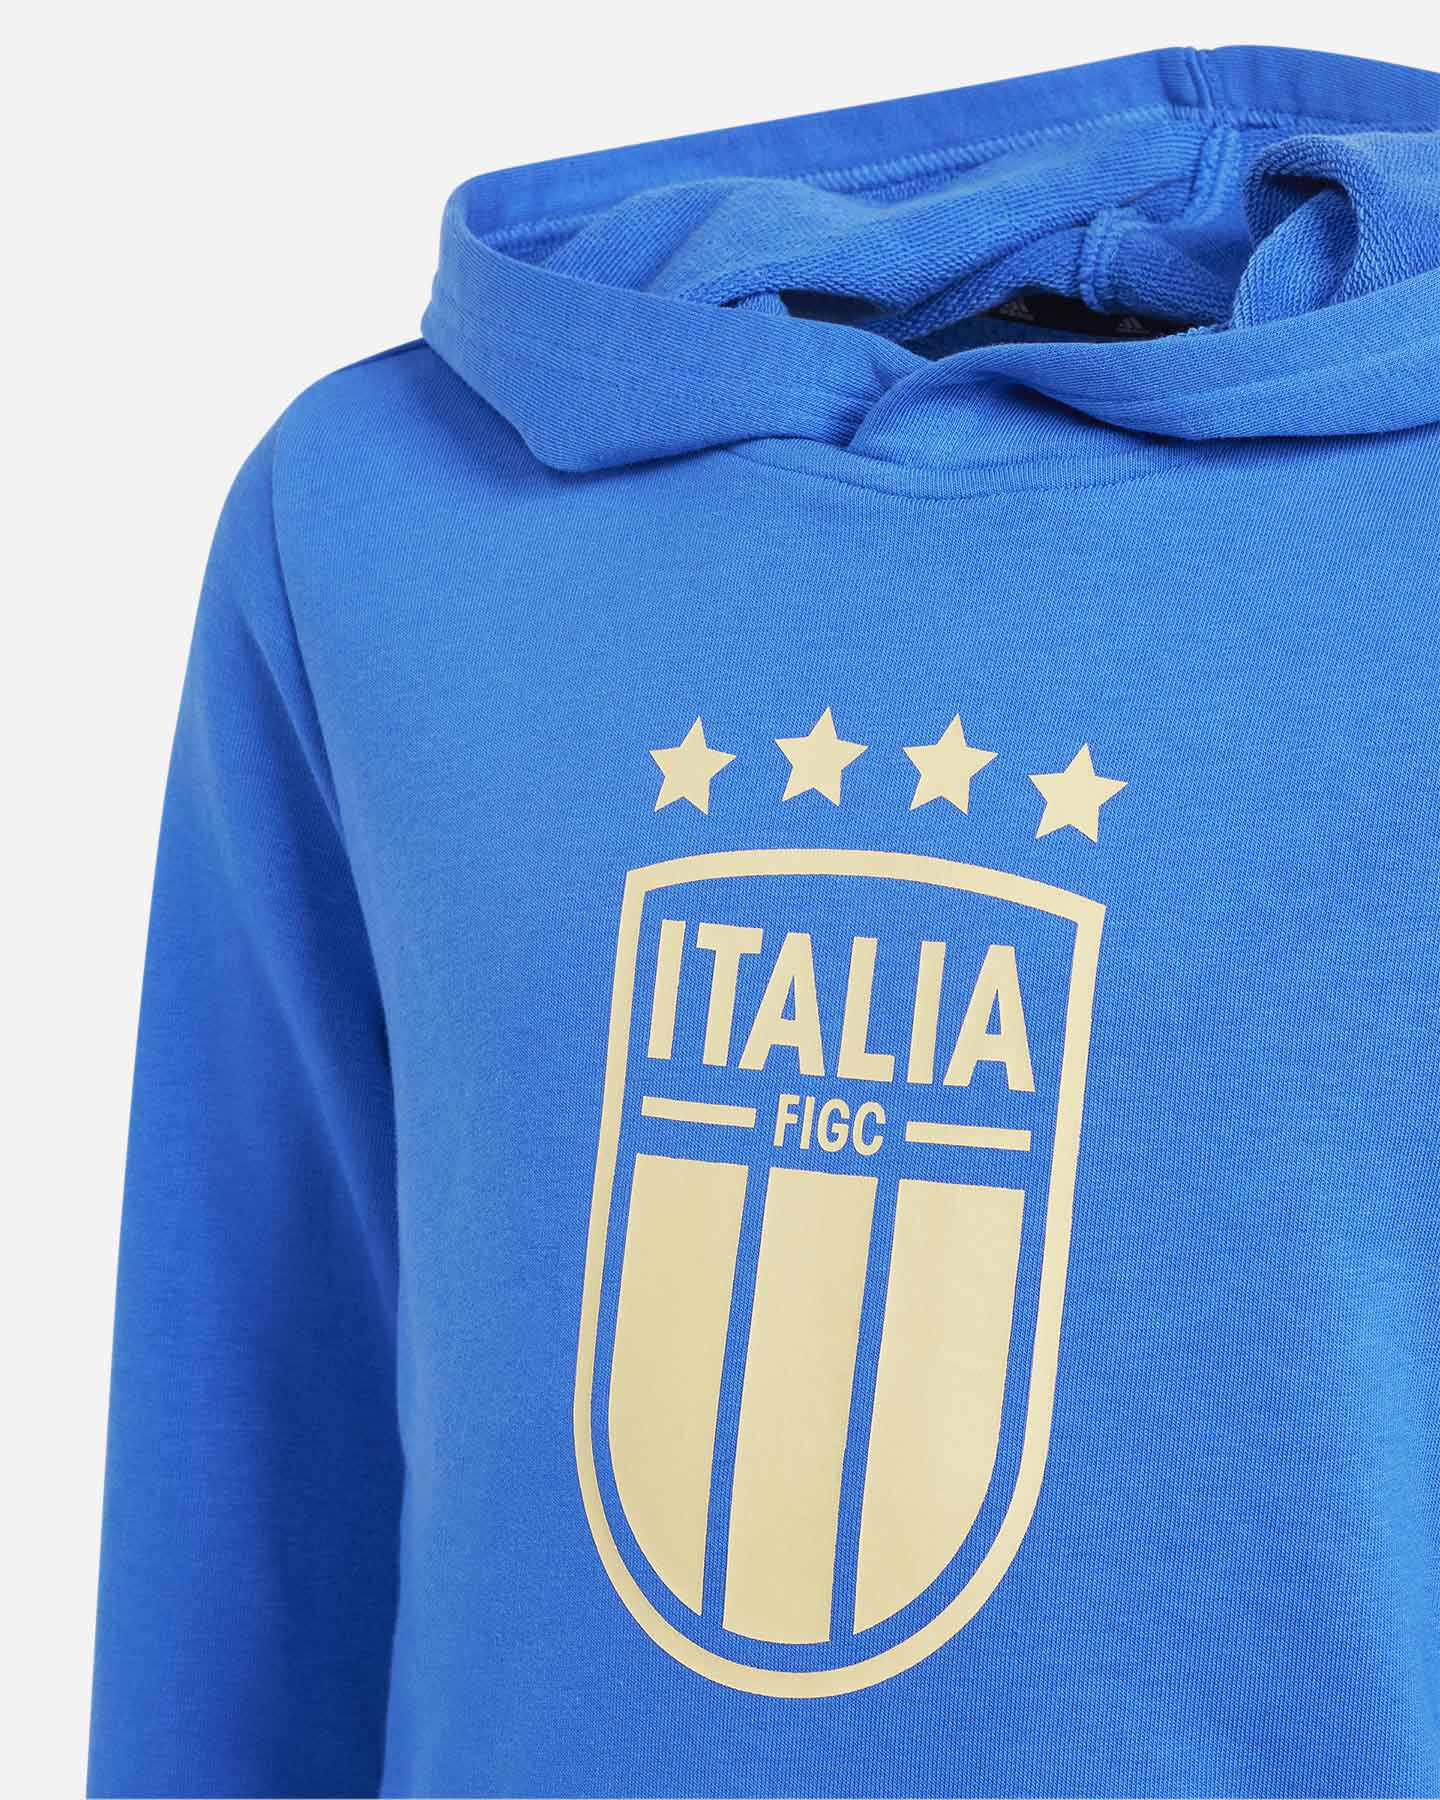  Abbigliamento calcio ADIDAS ITALIA FIGC JR S5657563|UNI|910A scatto 2